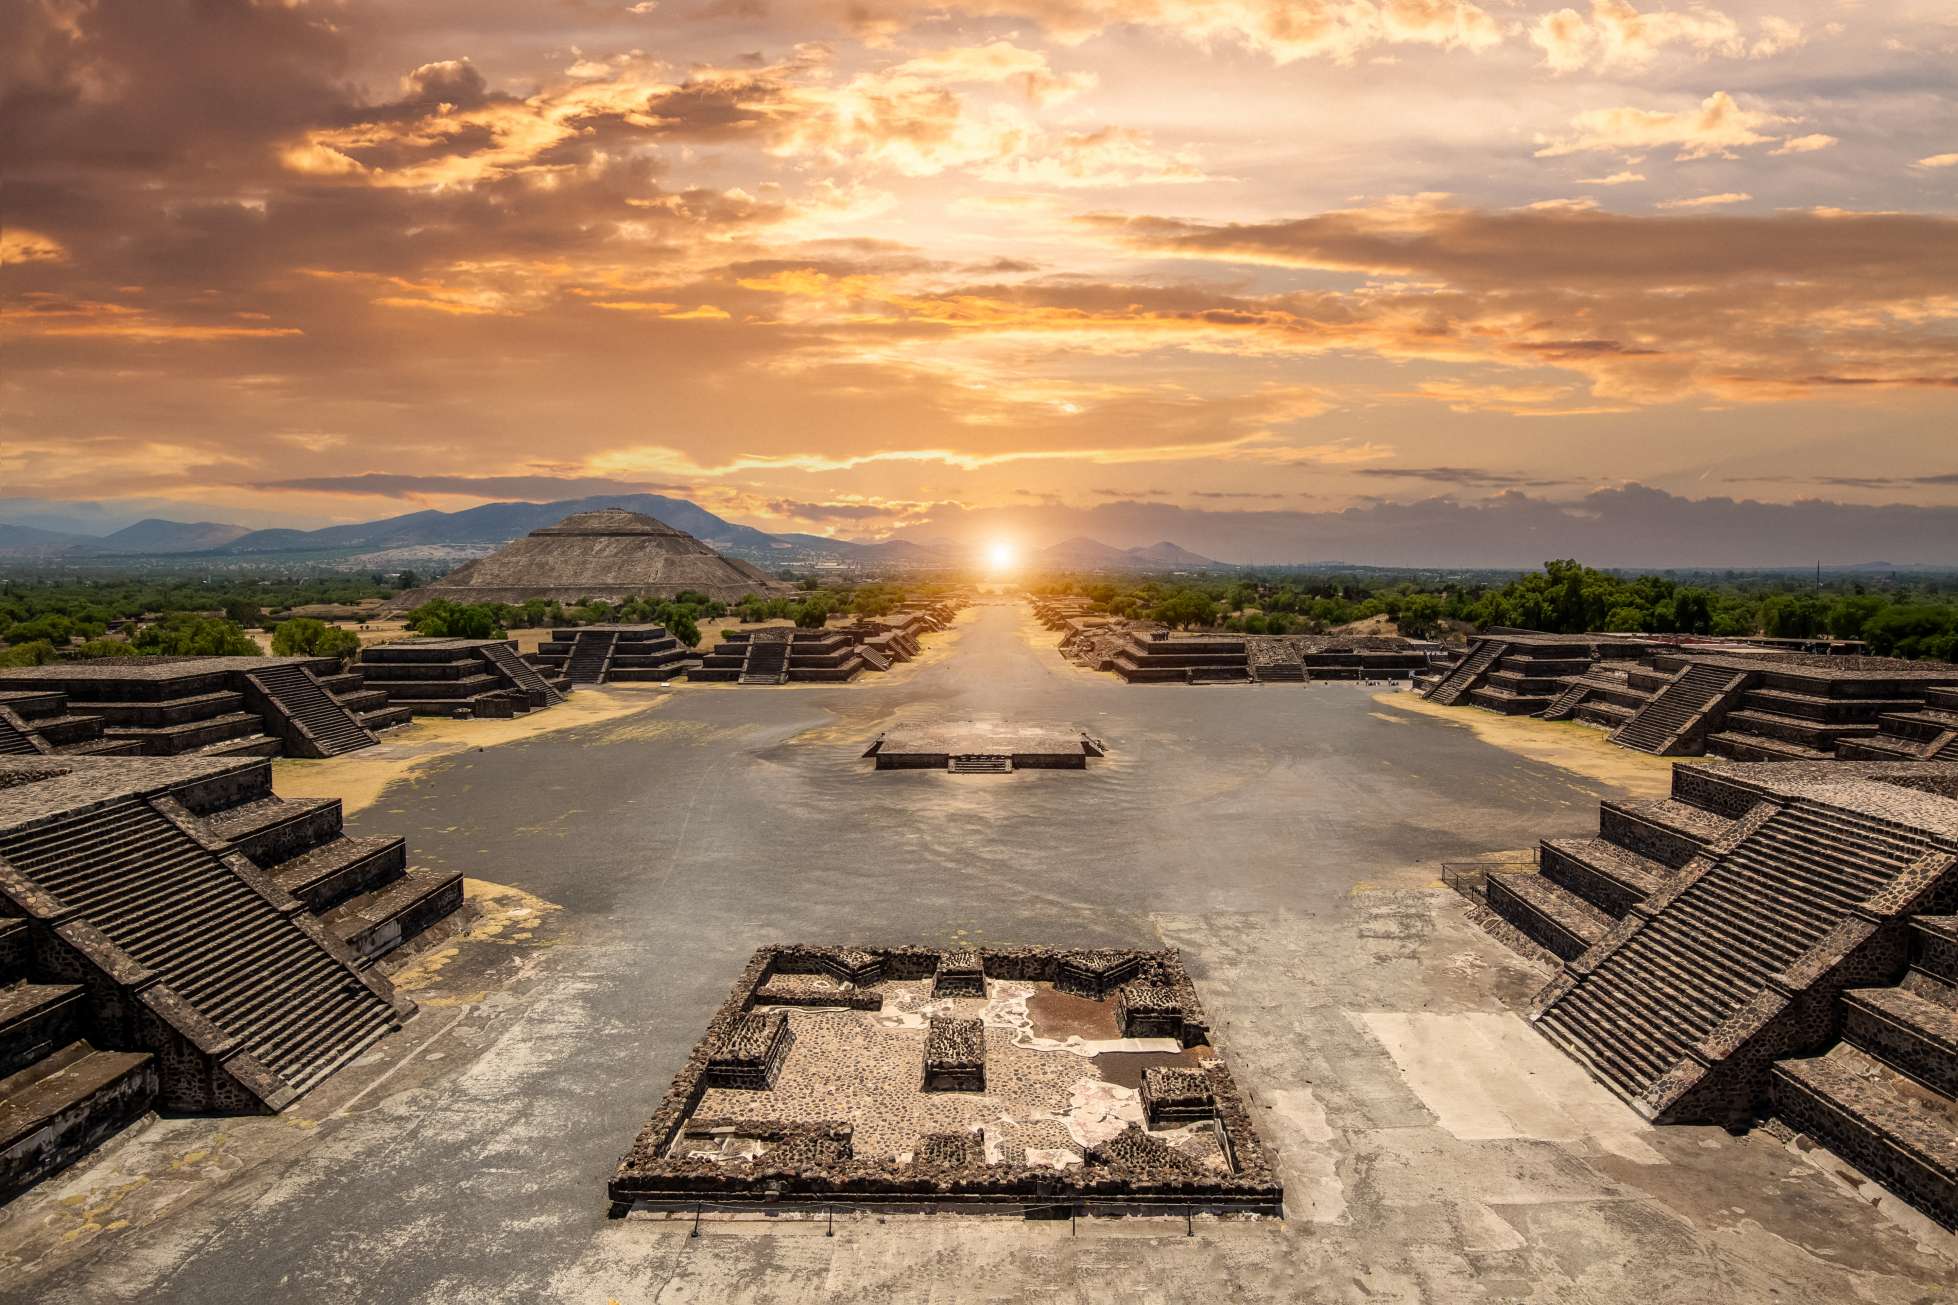 Dybt i hjertet af Mexico ligger et fascinerende arkæologisk sted, der har undret eksperter i århundreder. Teotihuacán, som betyder "stedet, hvor guderne blev skabt," er hjemsted for nogle af de mest imponerende pyramider og ruiner i hele Mellemamerika. Teotihuacán pyramids-komplekset ligger i det mexicanske højland og Mexico-dalen tæt på Mexico City. © iStock